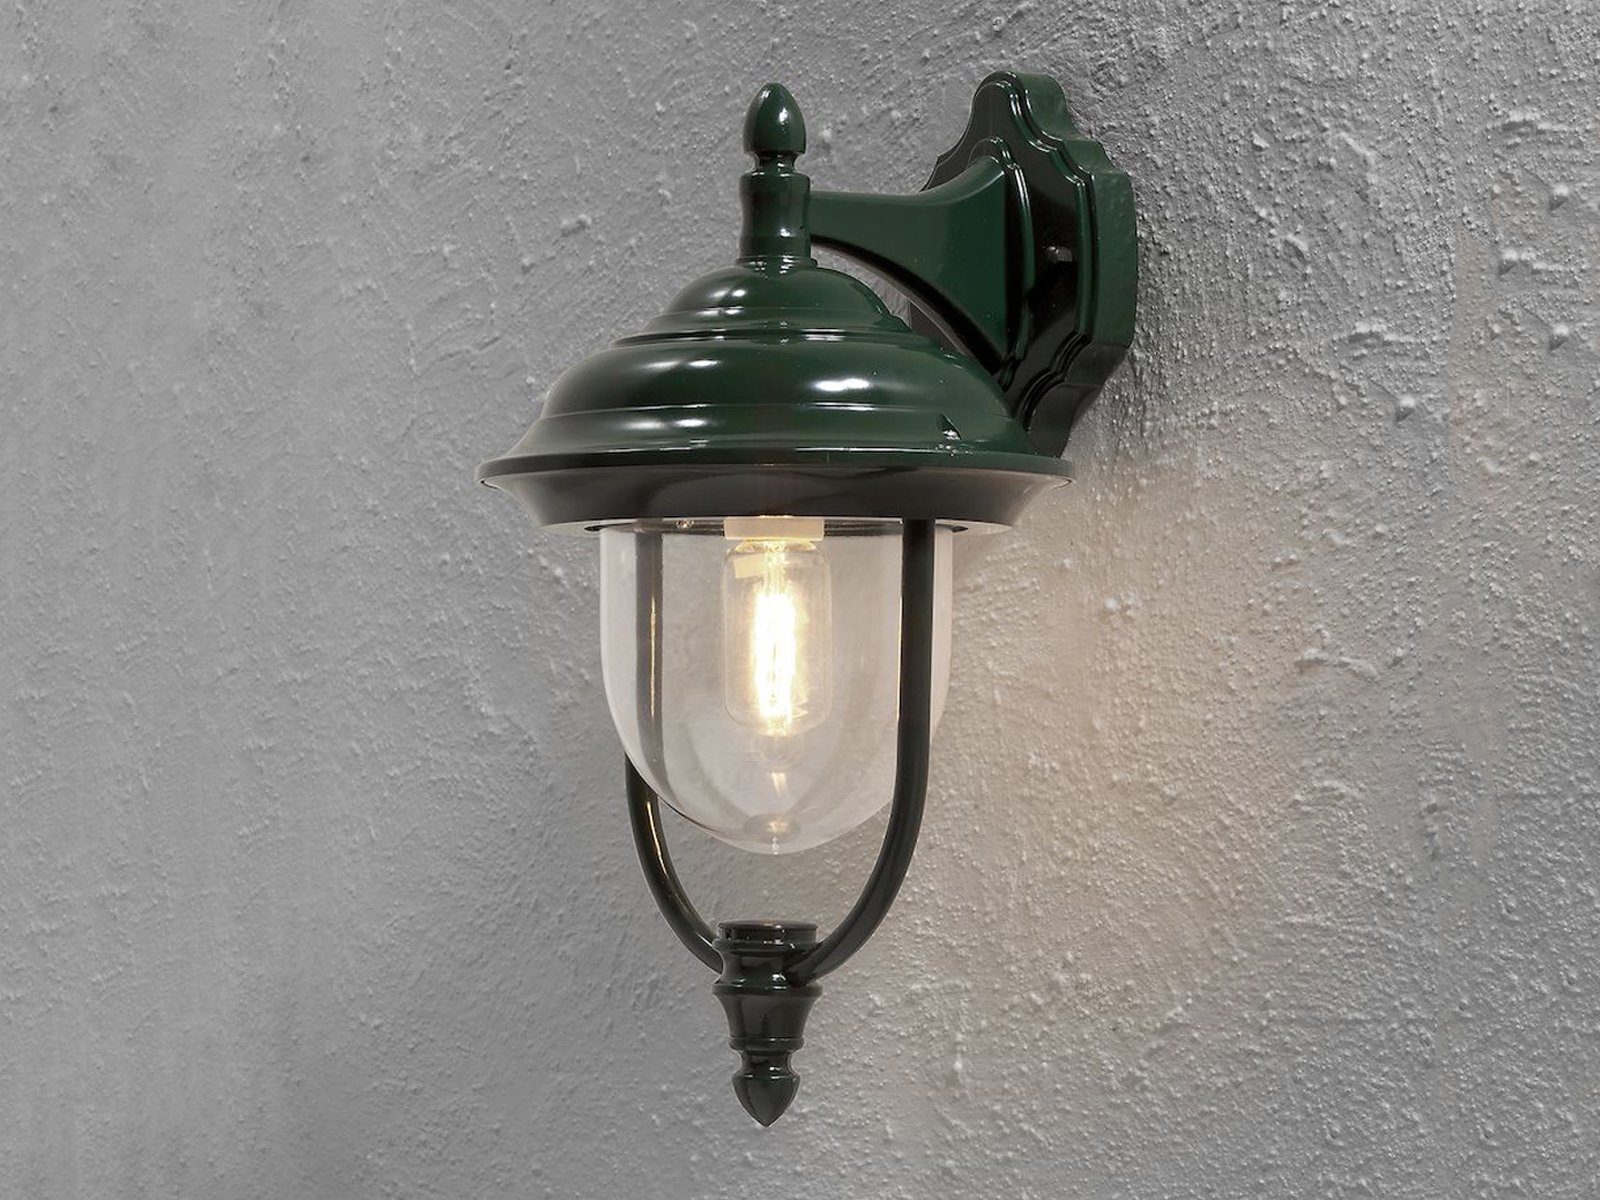 KONSTSMIDE LED Außen-Wandleuchte, LED wechselbar, Warmweiß, Wand-laterne Landhausstil Haus-wand beleuchten Außenlicht Grün H: 46cm